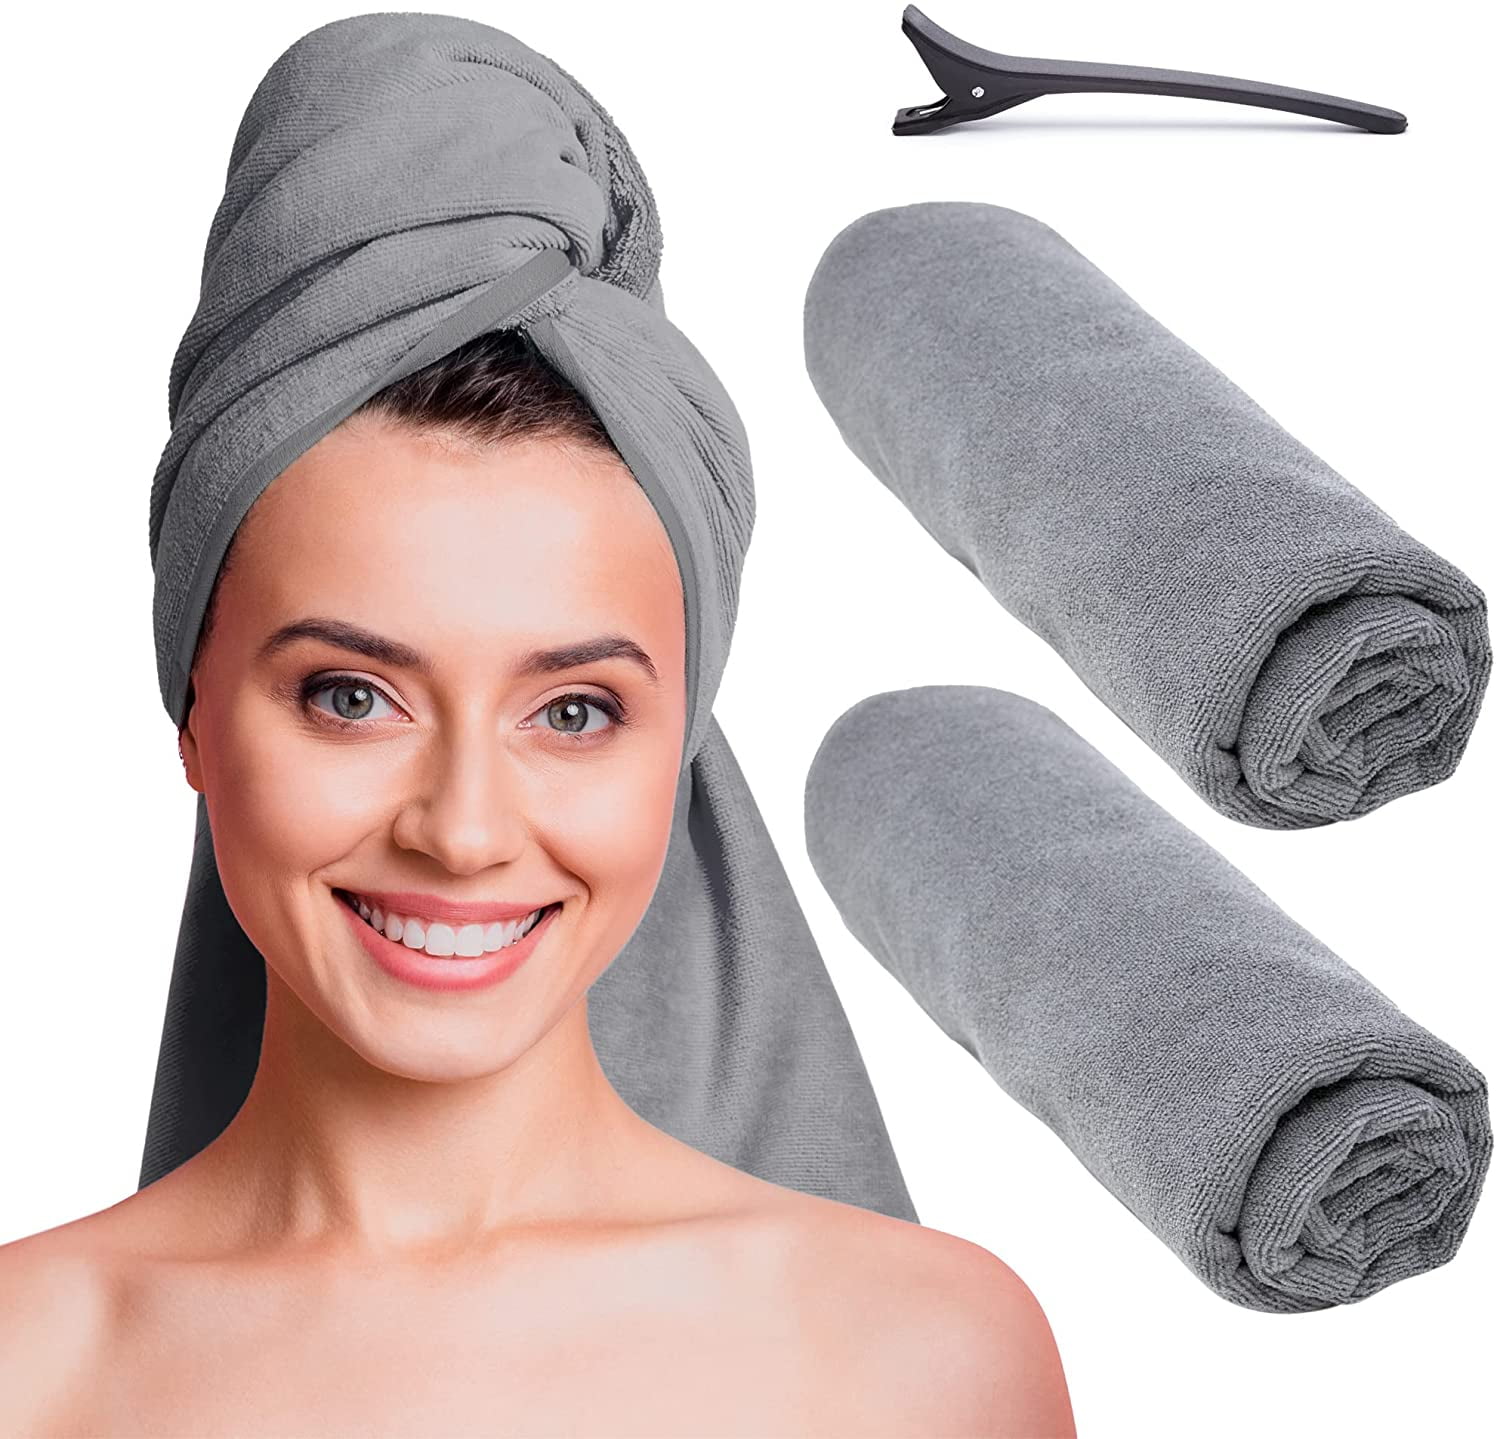 Microfiber Hair Drying Turban Bath Towel Head Wrap For Women Bath Accessories 